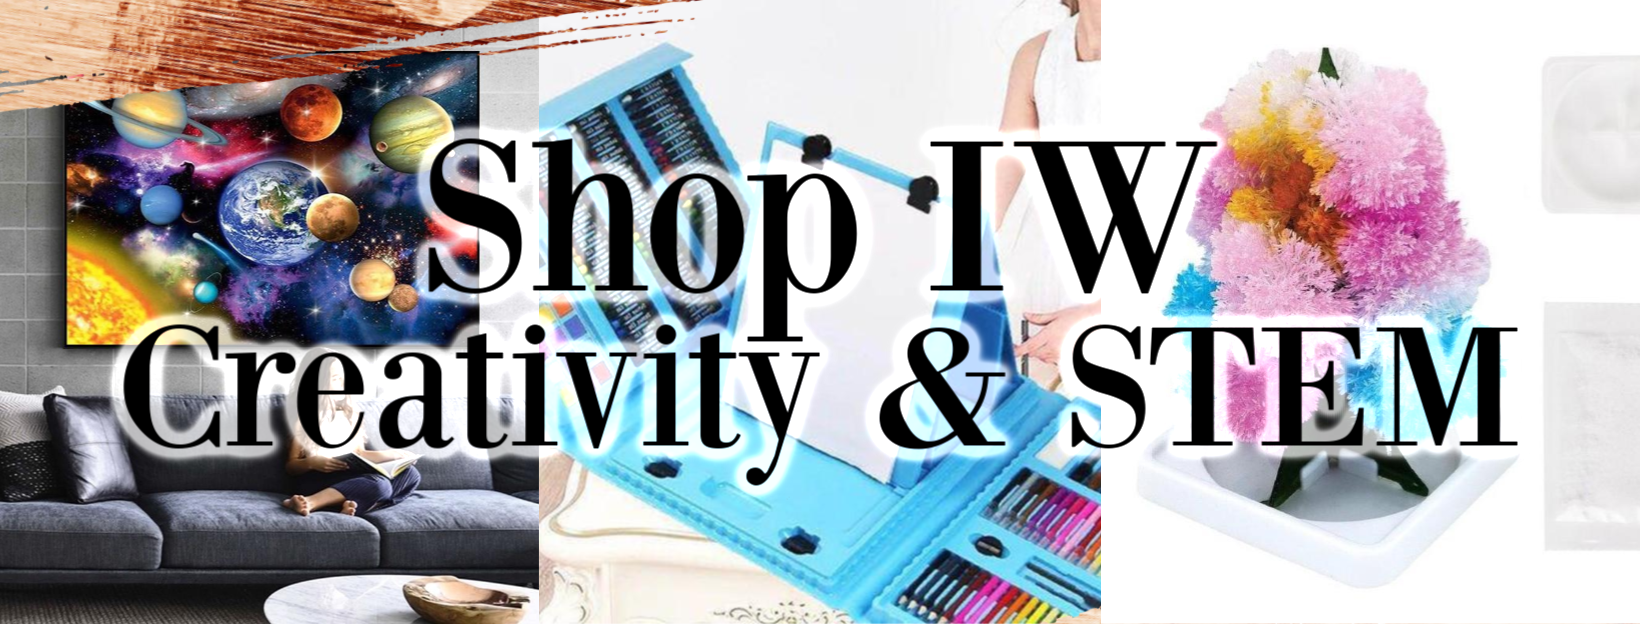 Shop Creativity & STEM